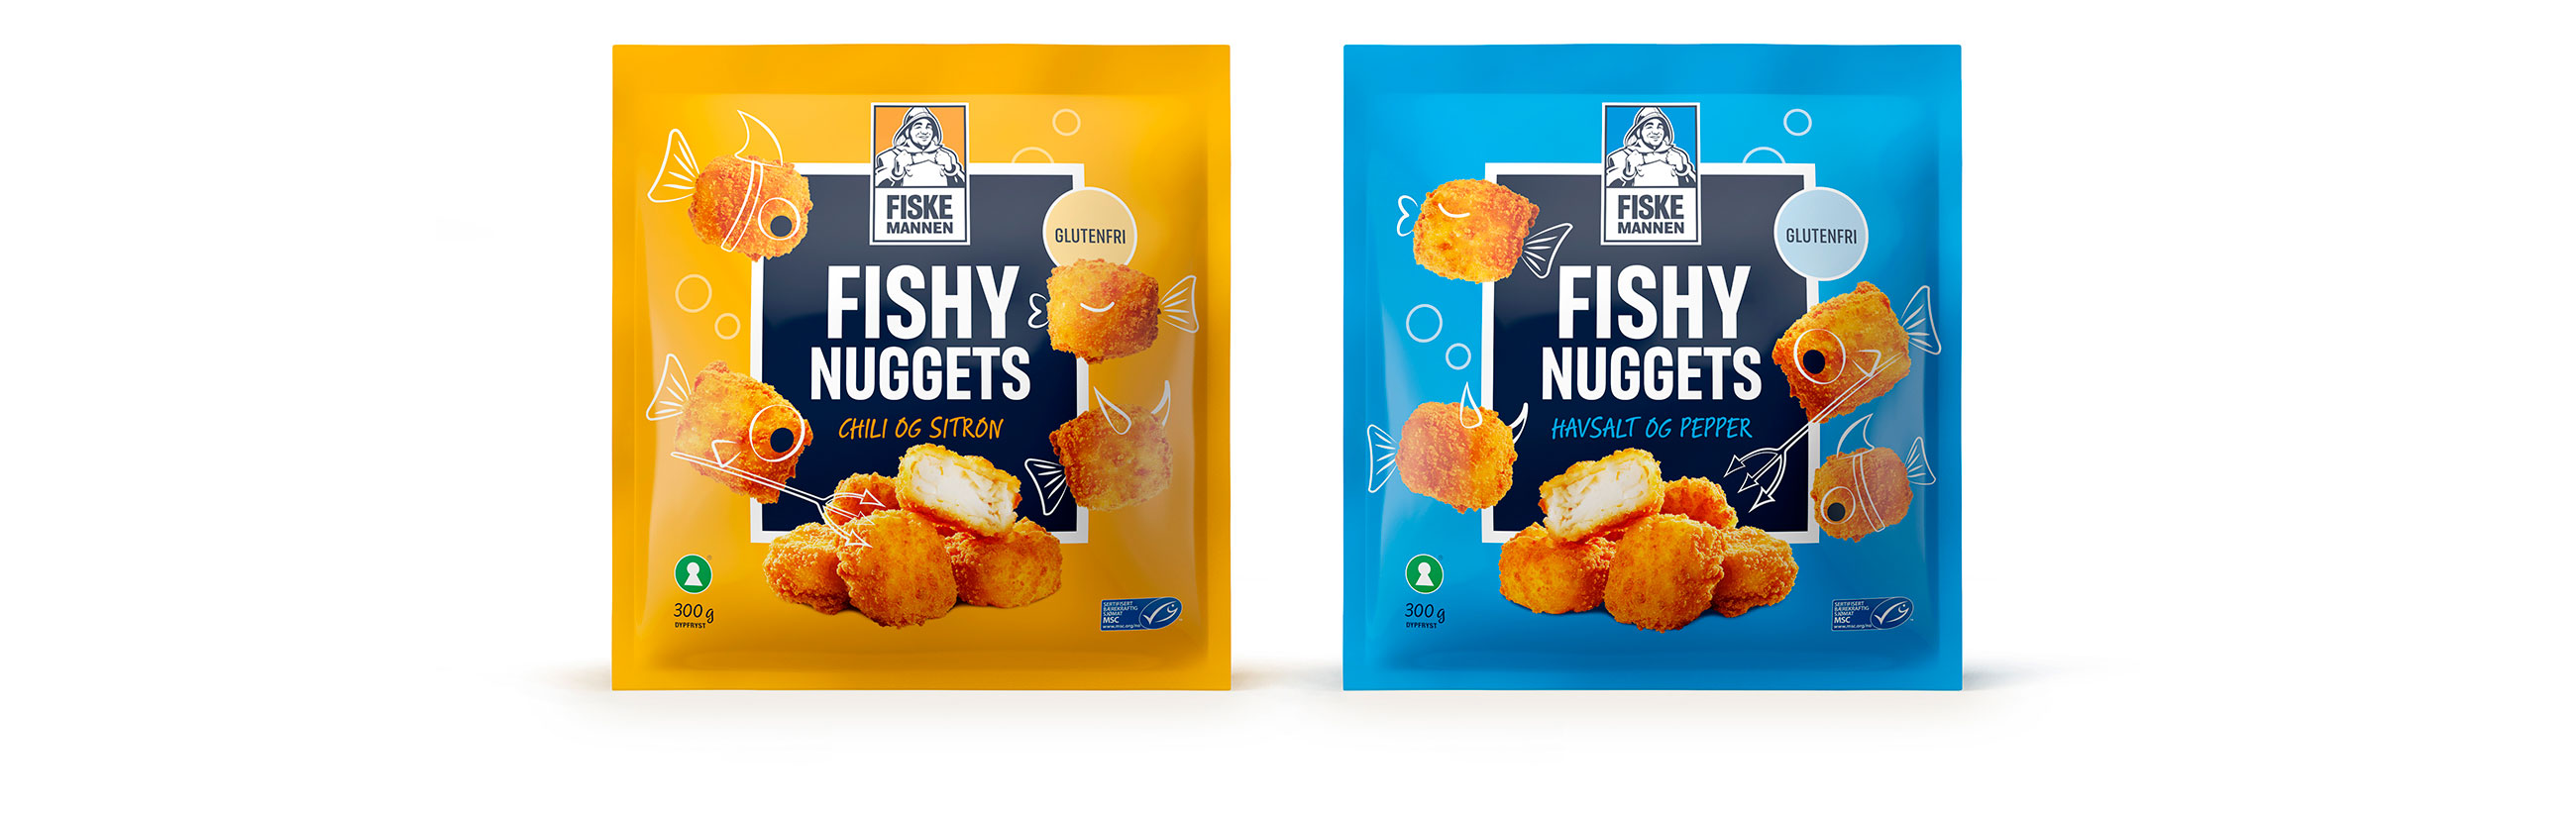 Fiskemannen Fishy nuggets, chili & sitron, havsalt & pepper. Emballasje packaging design.